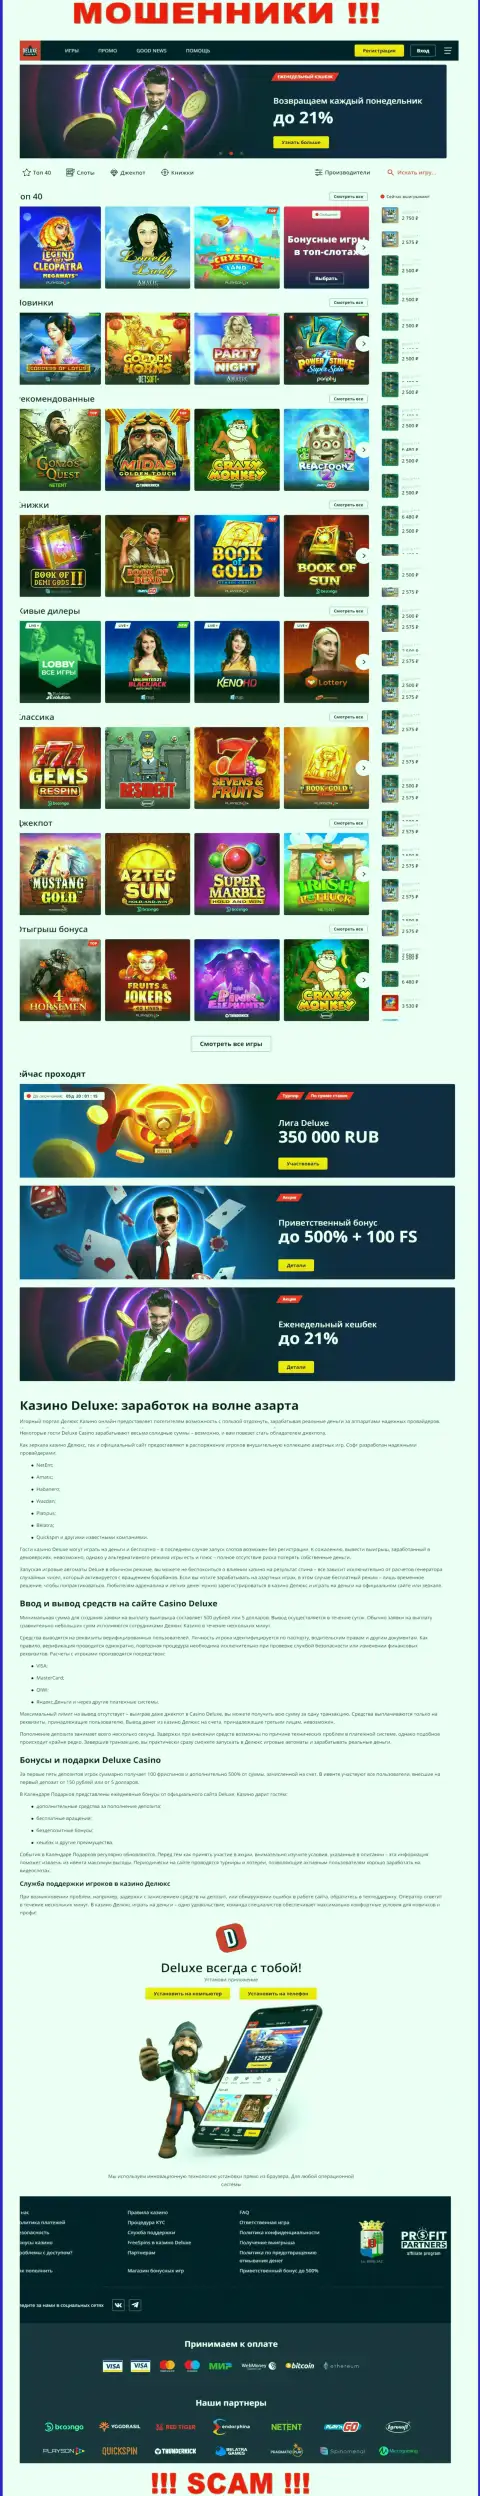 Официальная интернет компании Deluxe Casino